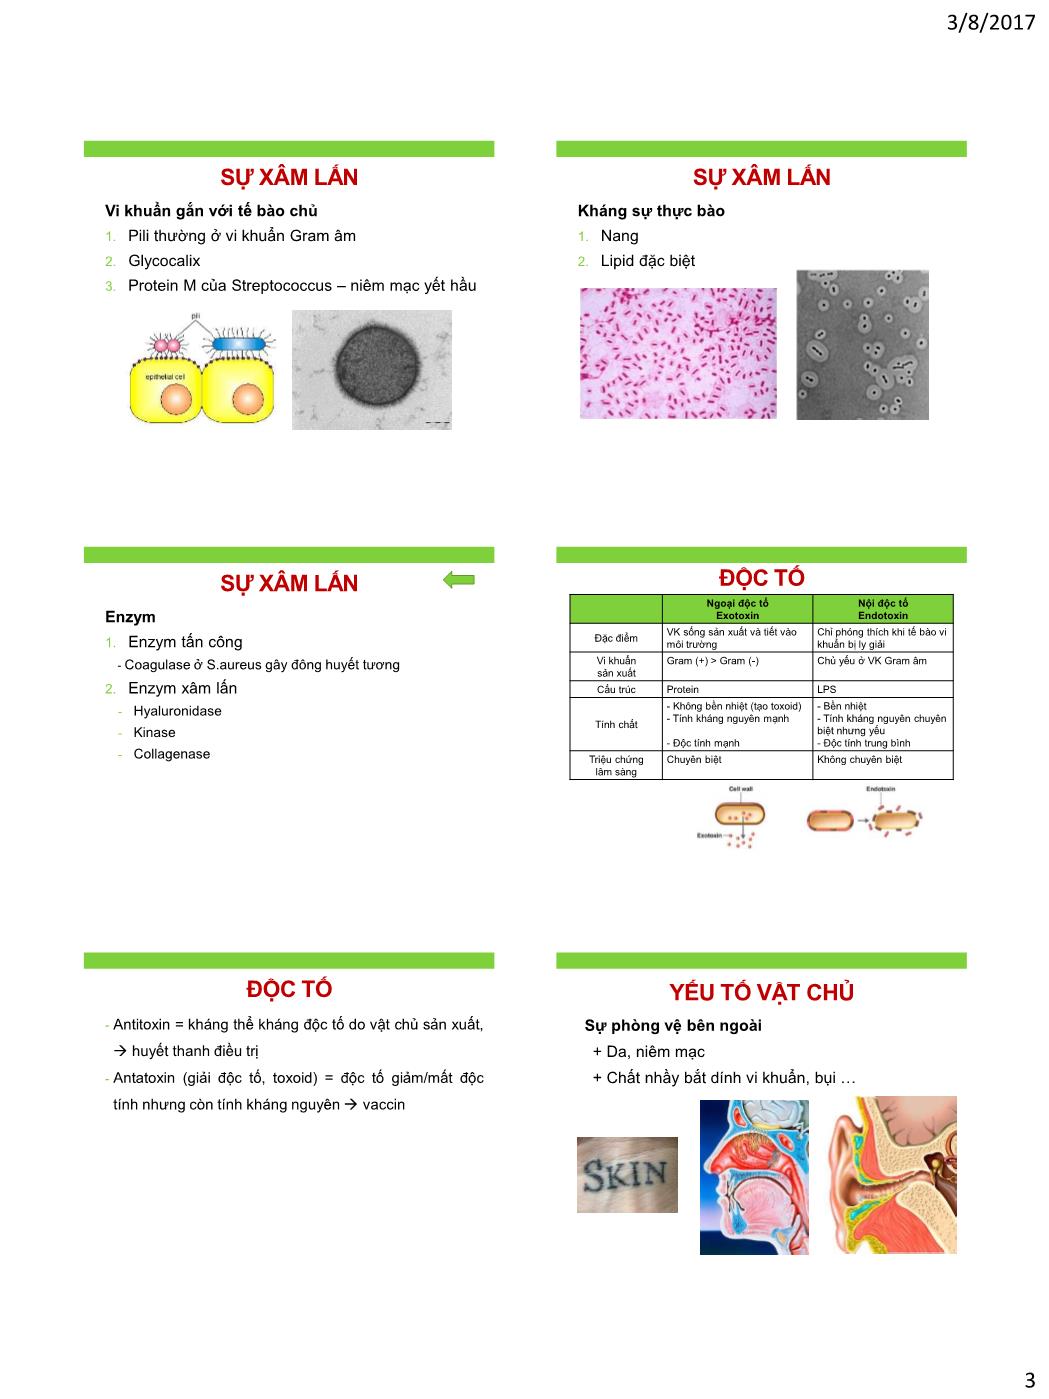 Bài giảng Vi sinh vật - Bài: Liên hệ vật chủ - Vi khuẩn trang 3